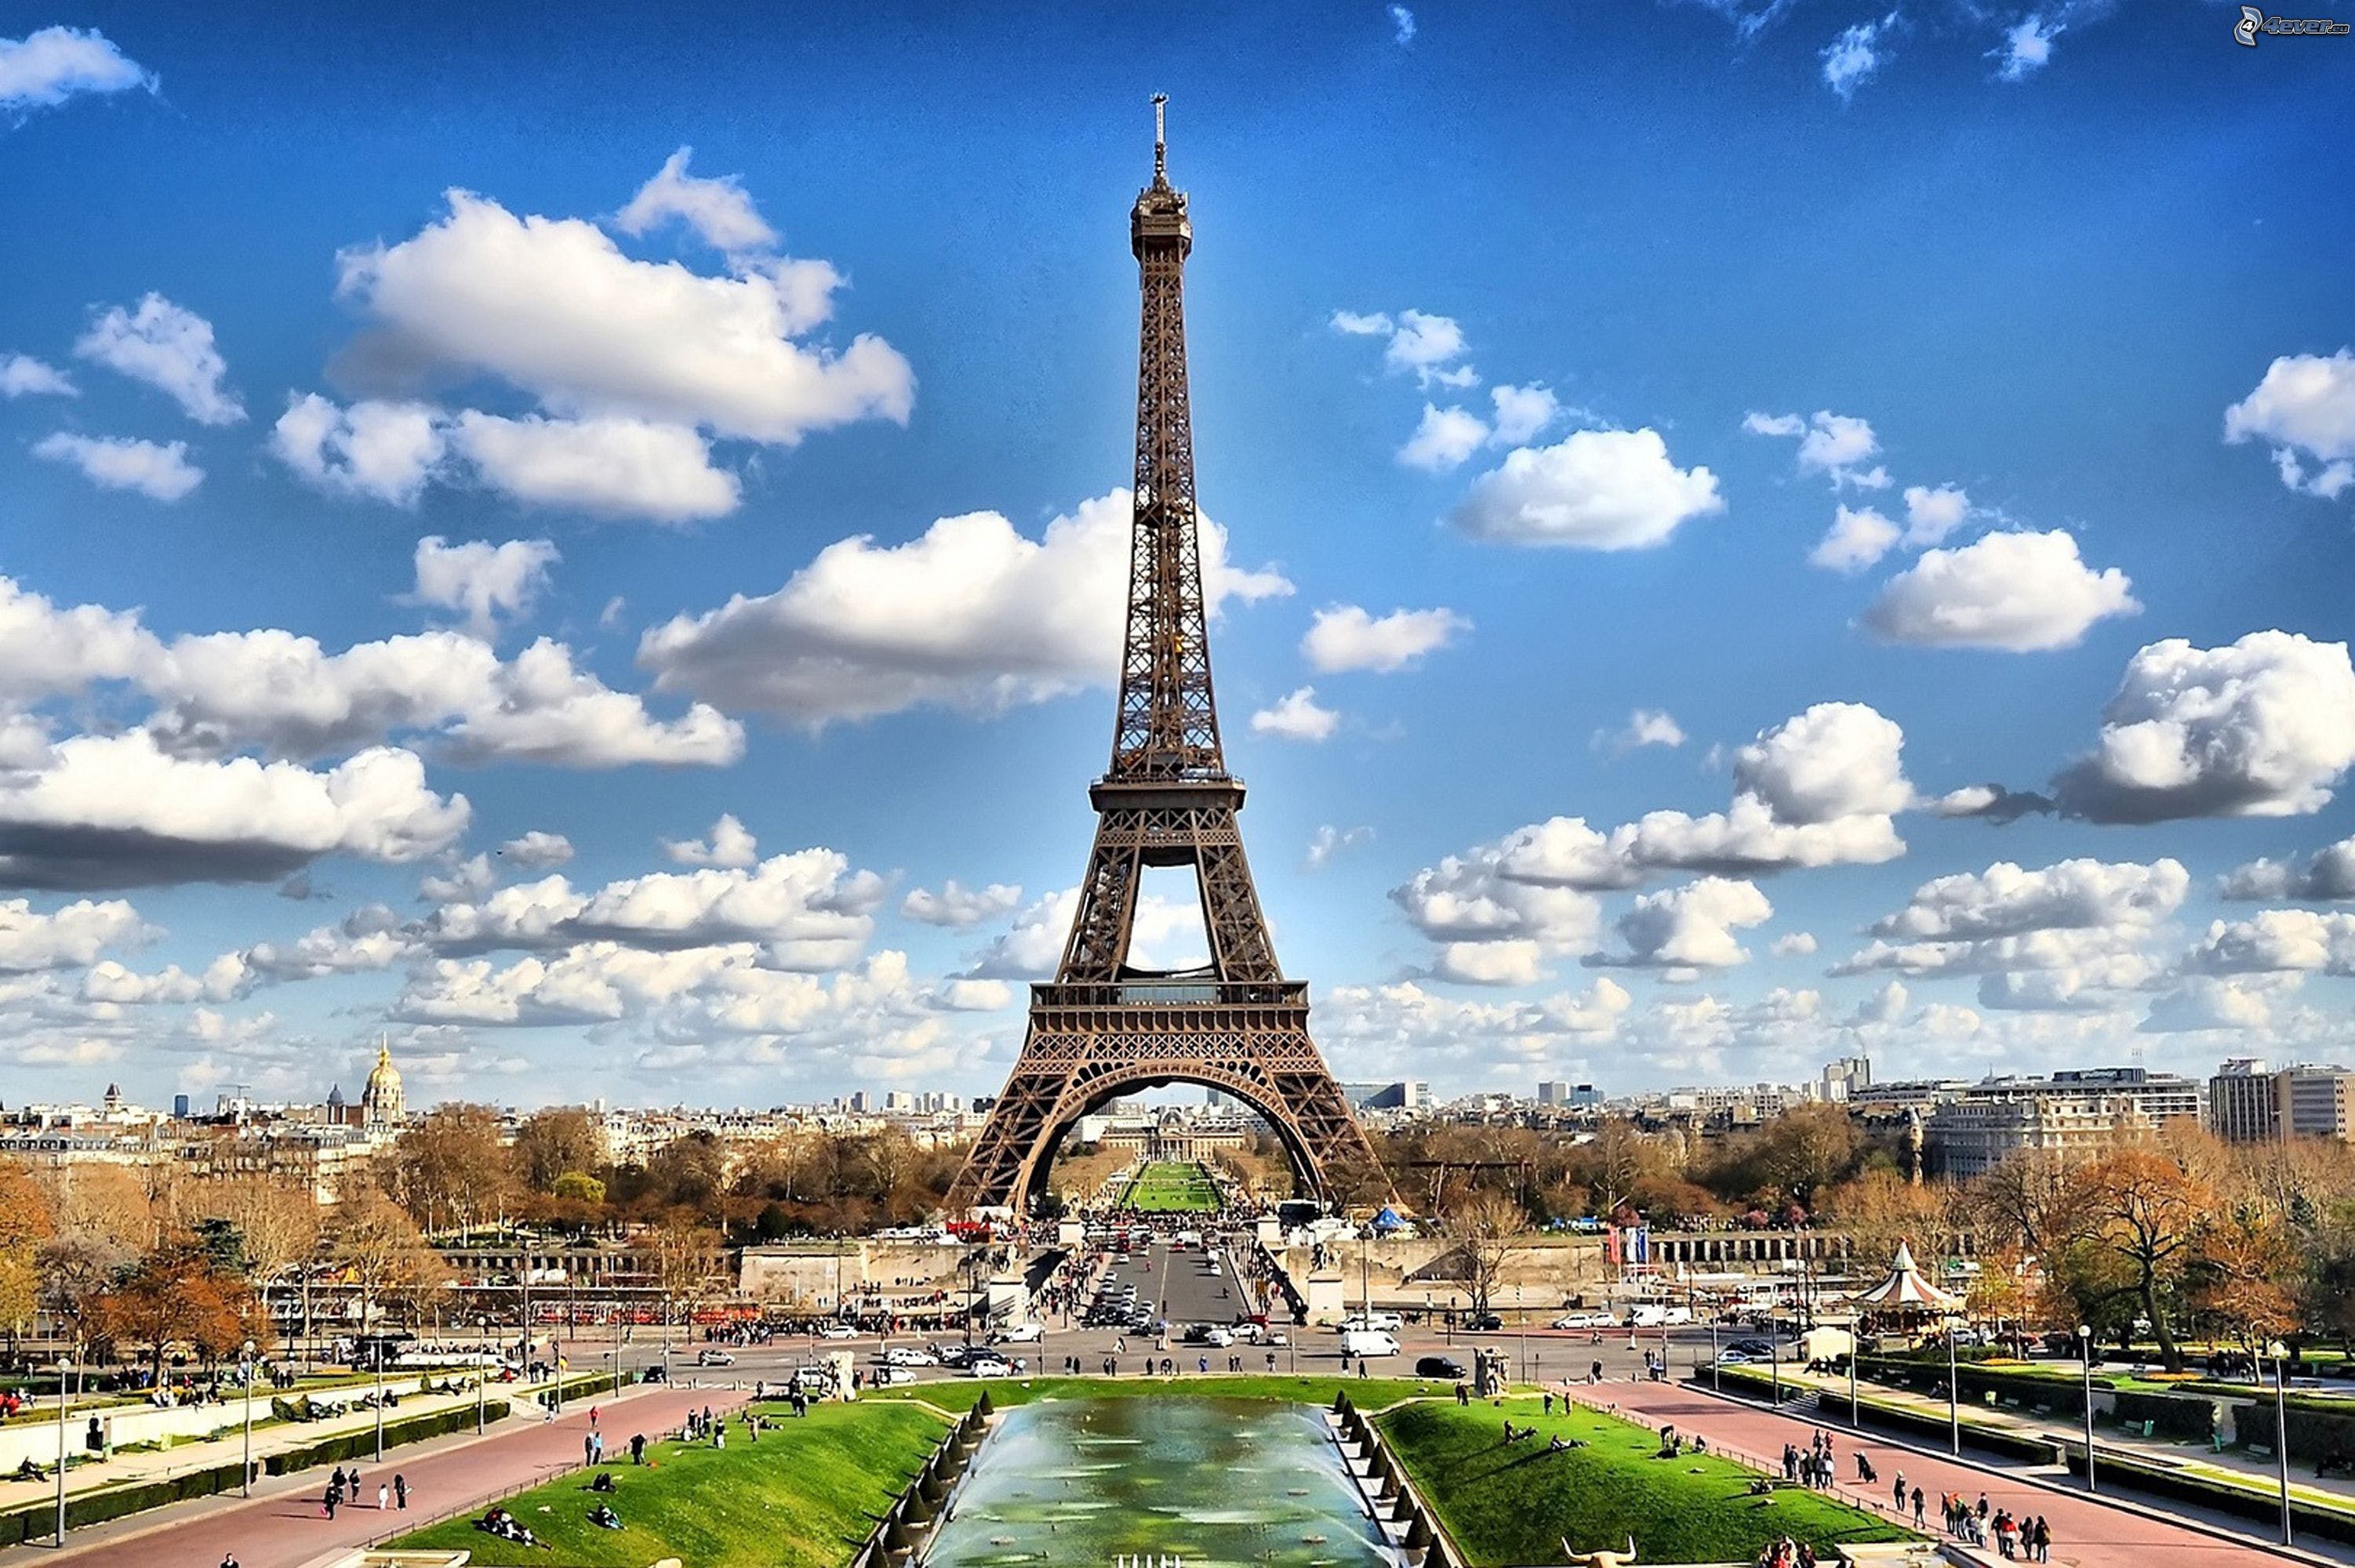 ฝรั่งเศสเดินหน้า เตรียมออกกฎหมายเก็บภาษีบริษัทไอที คิดอัตรา 3% จากรายได้ในฝรั่งเศส | Blognone